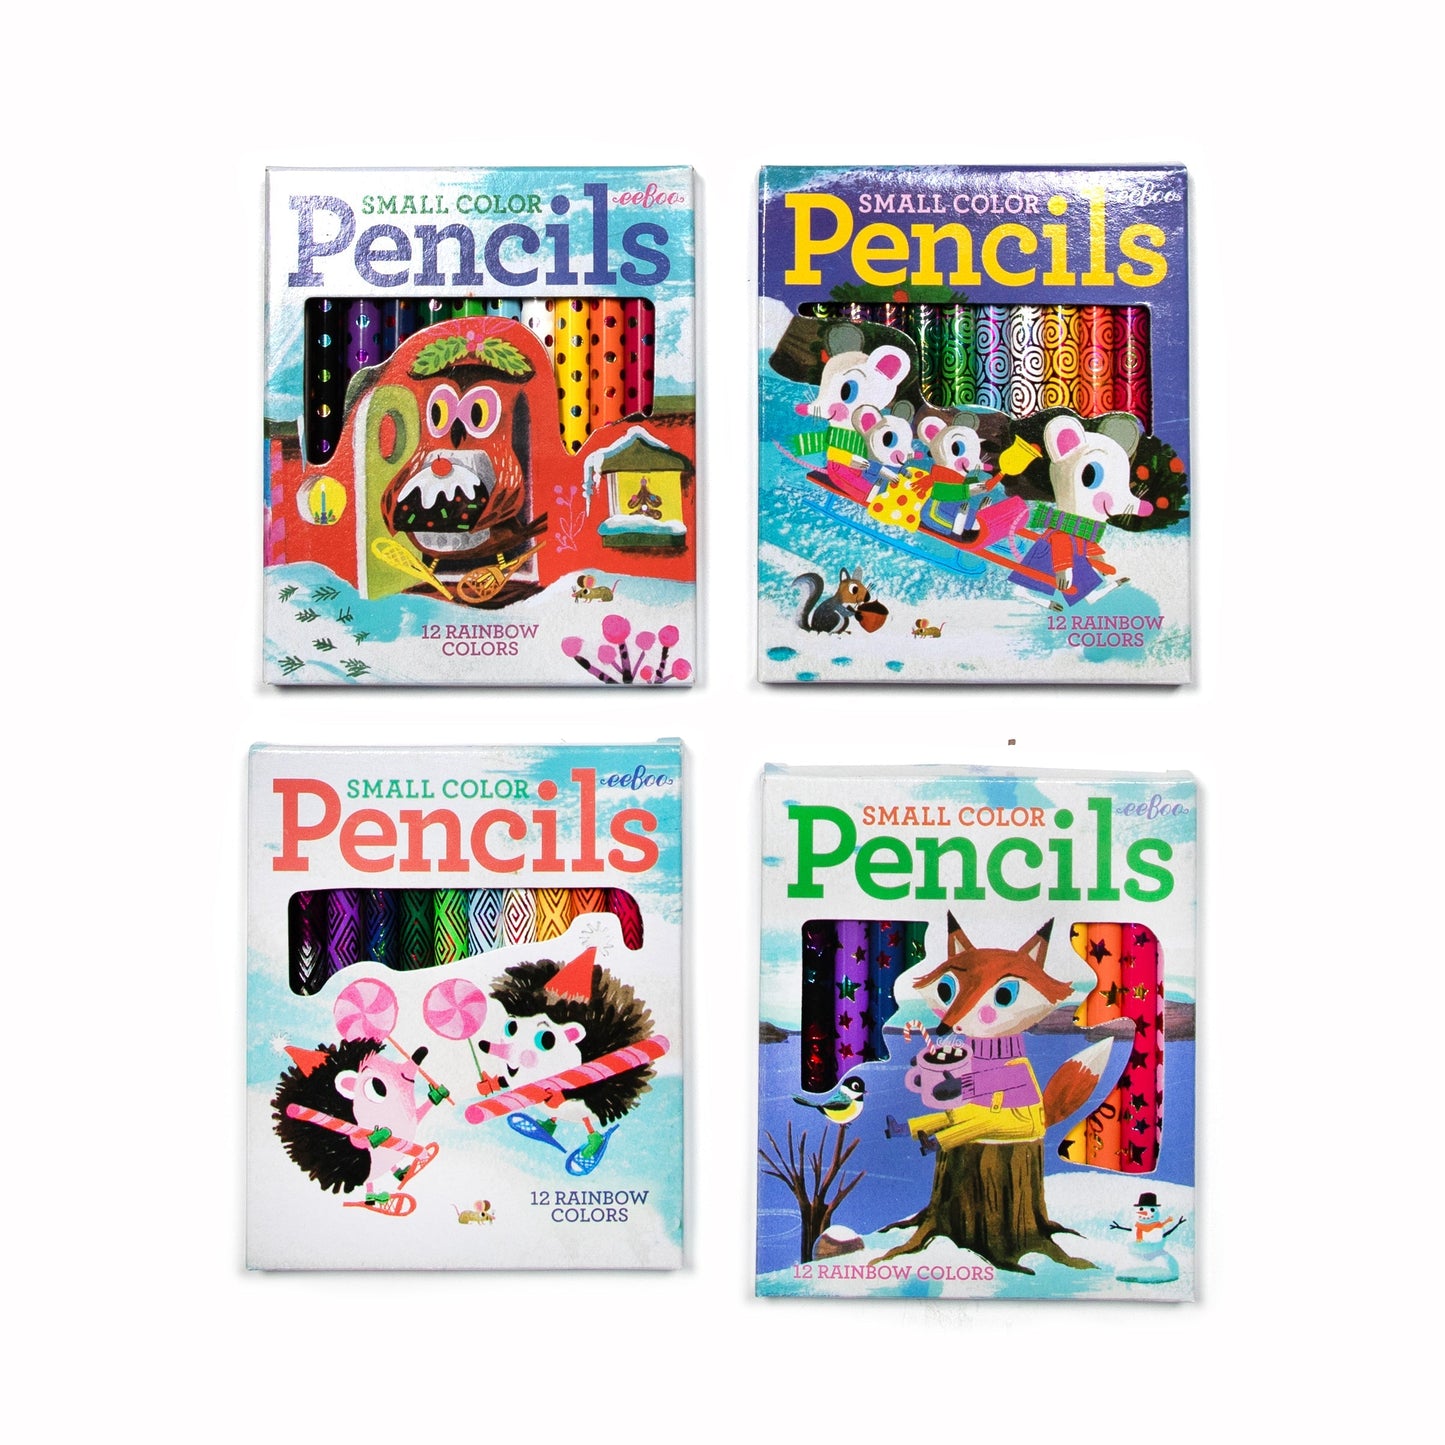 Small Colored Pencil Sets